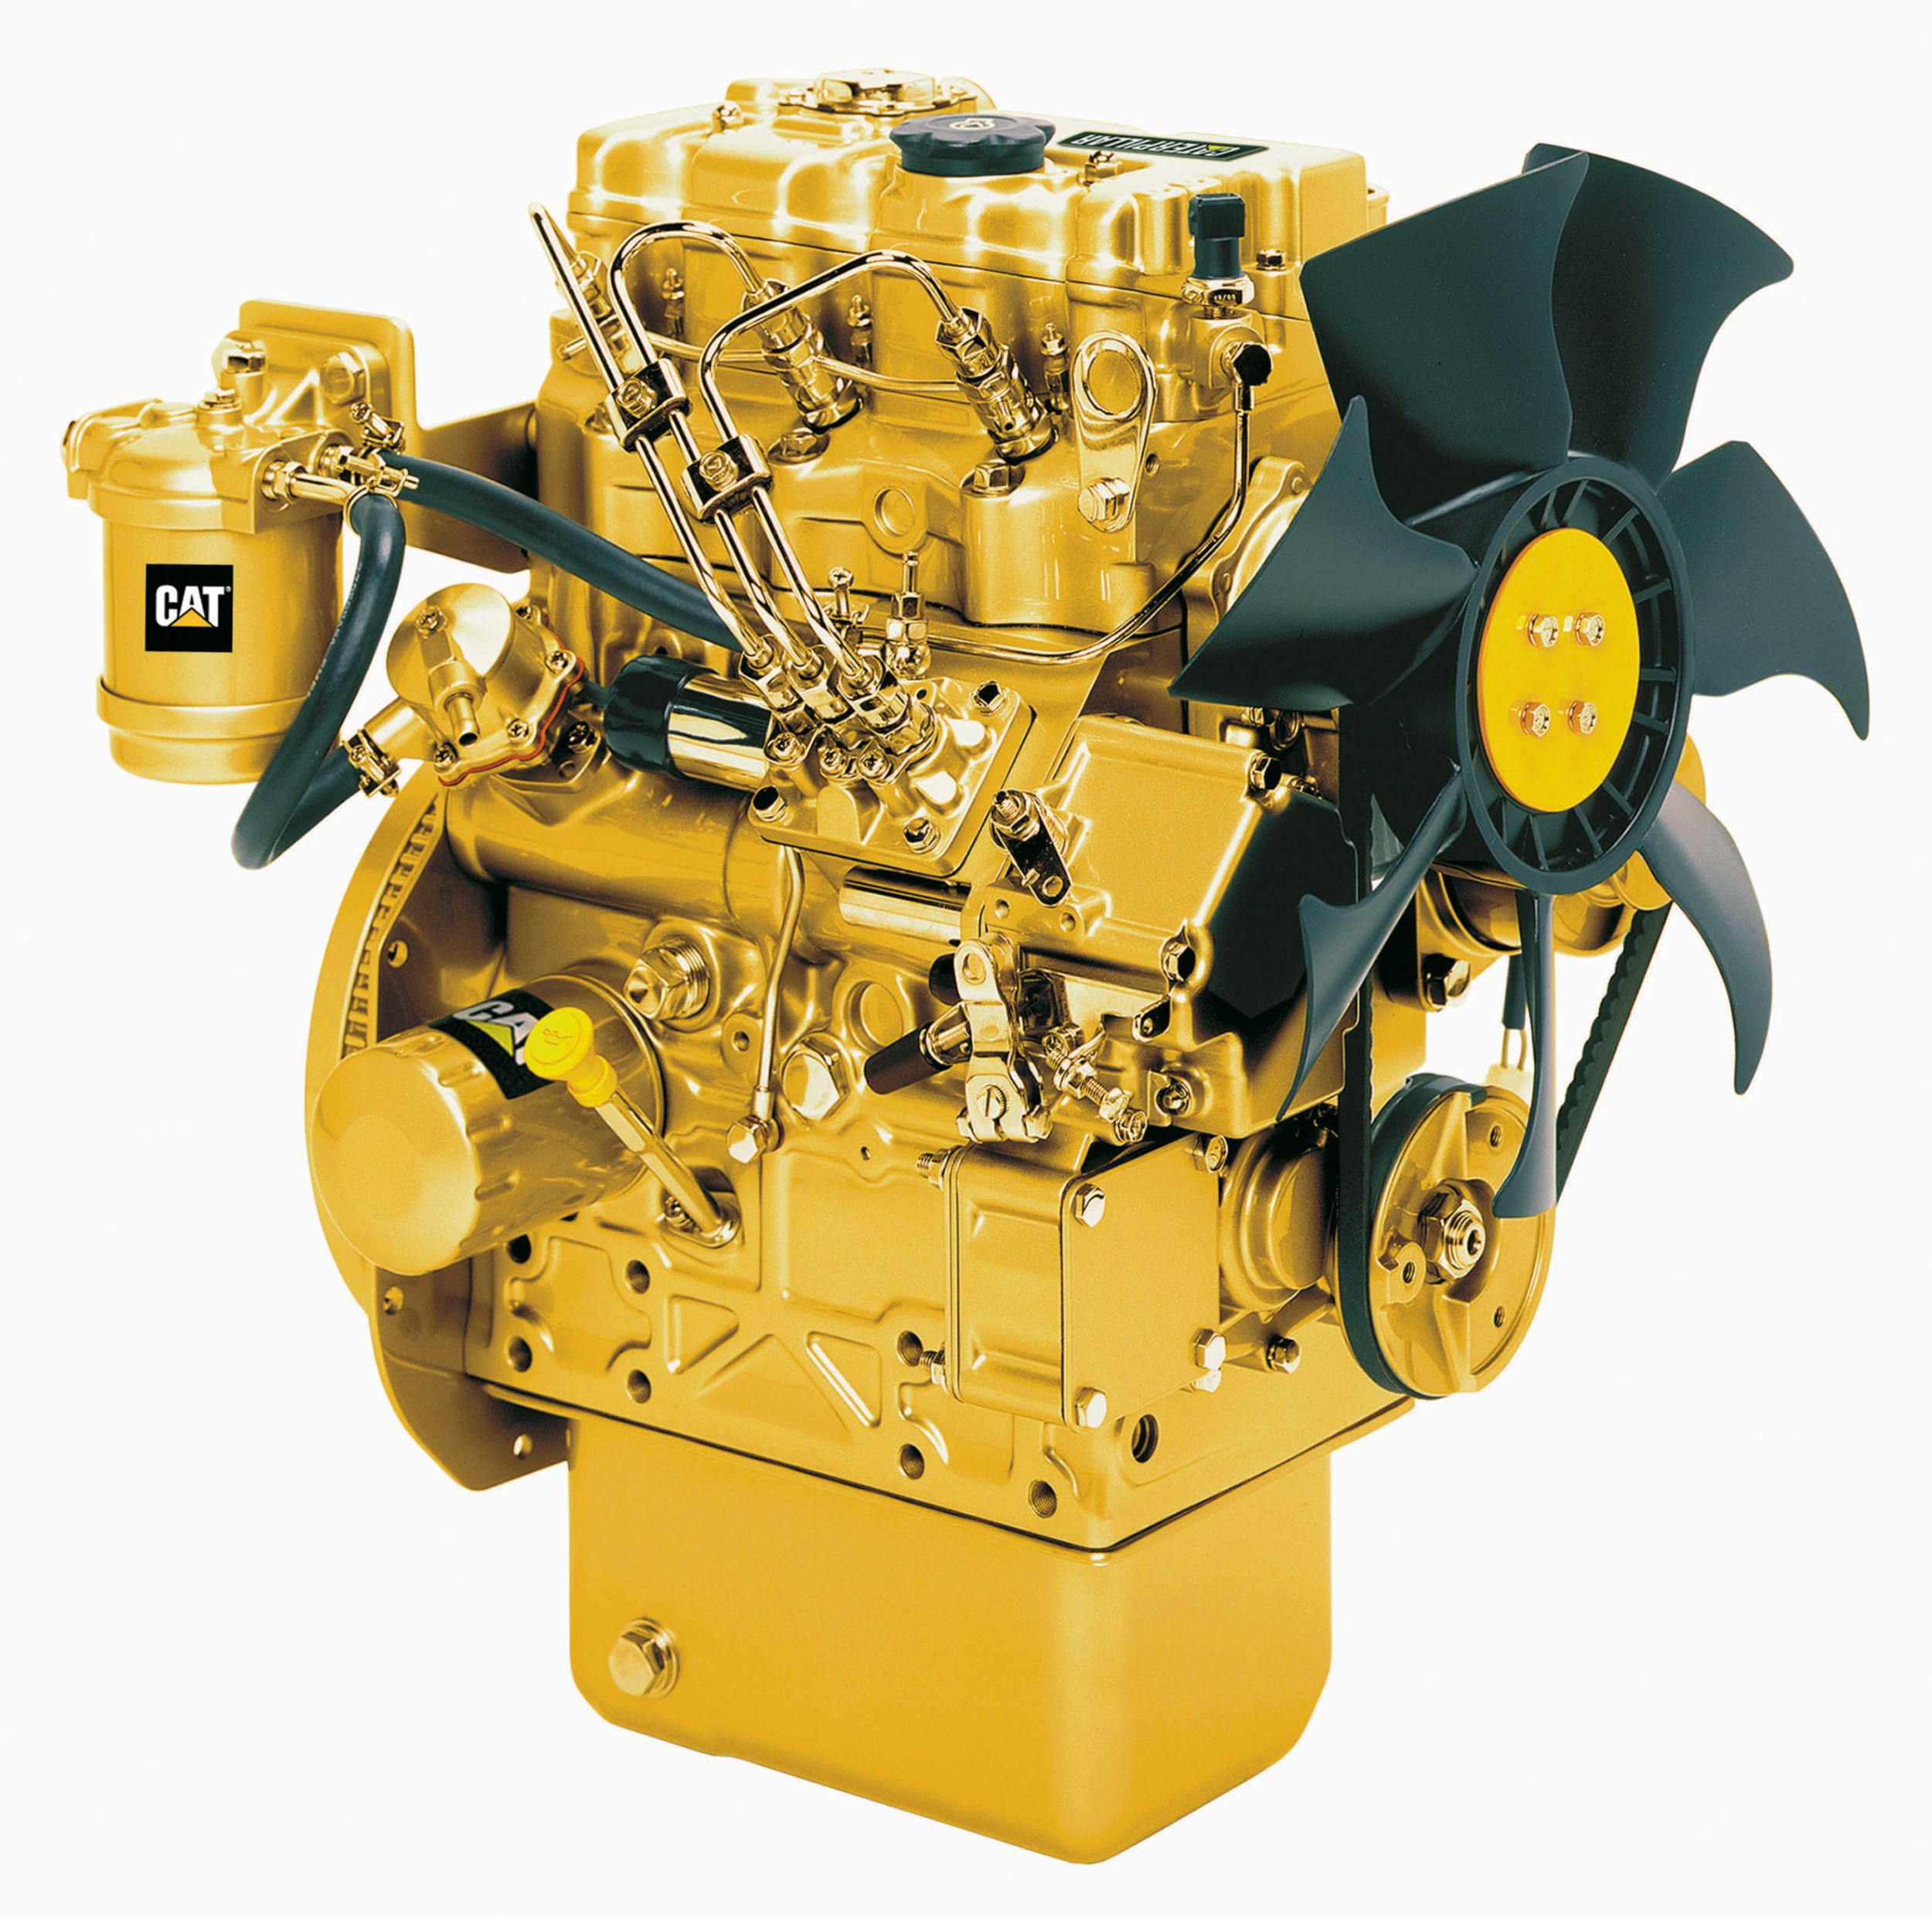 Дизельные двигатели C1.1 LRC — для стран с низкими экологическими требованиями и регионов, на которые не распространяется действие стандартов